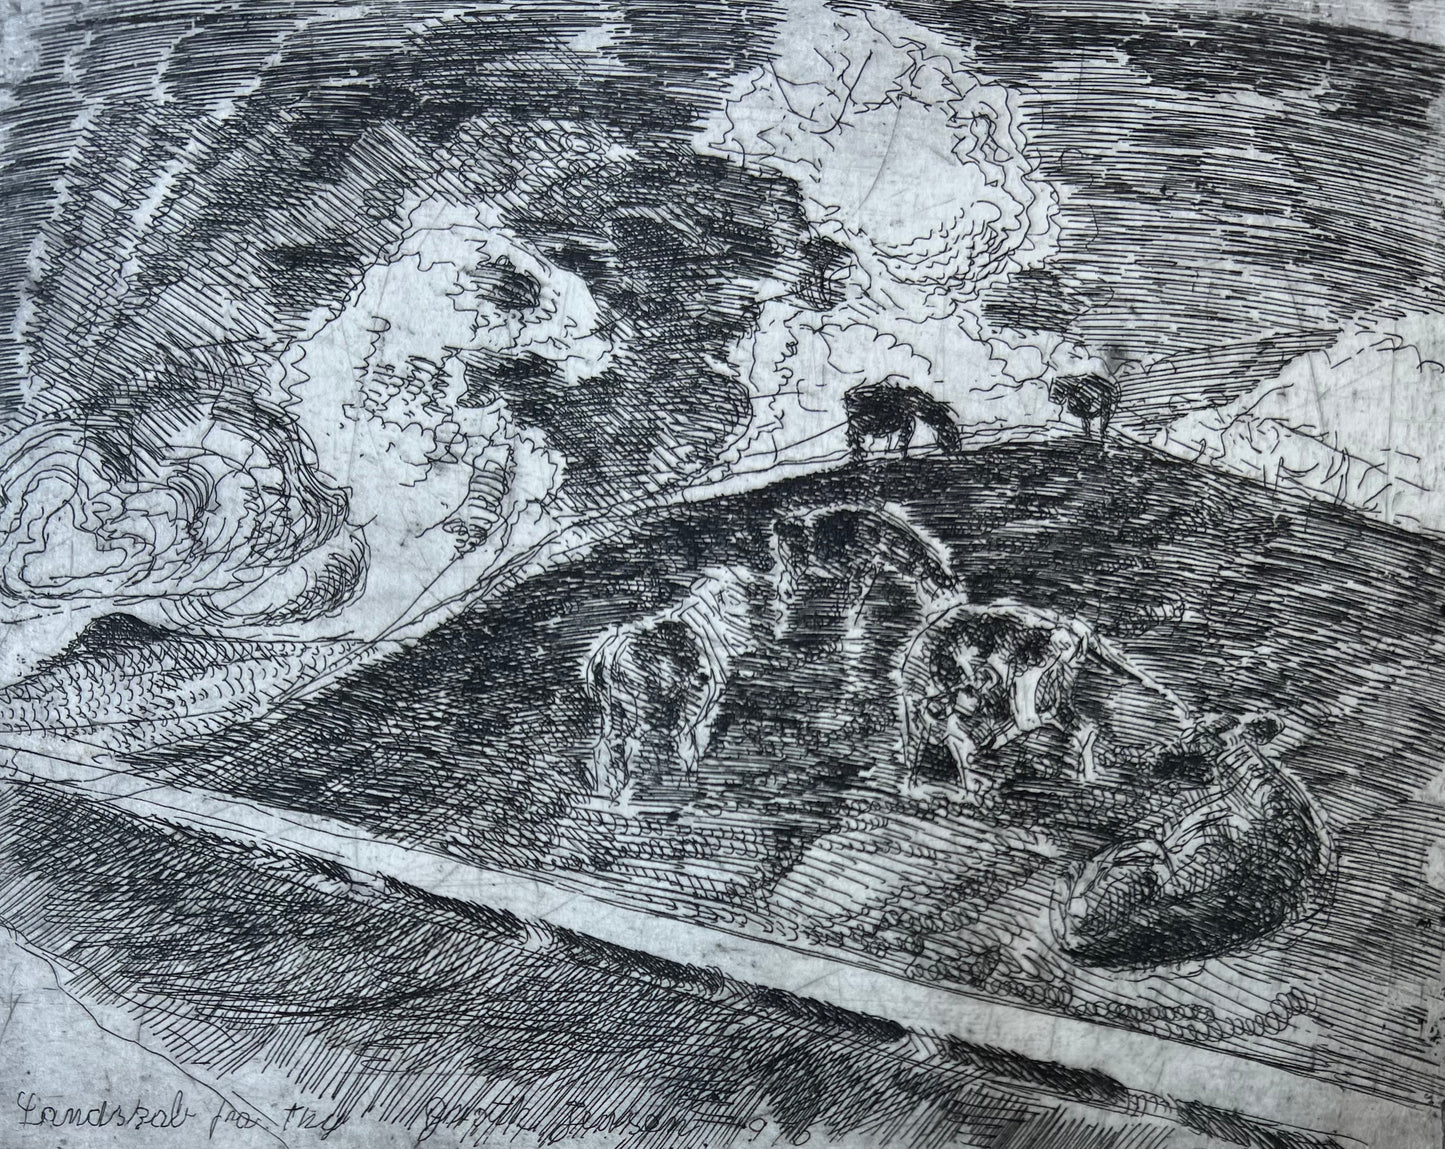 Jens Peter Groth-Jensen. "Landscape from Thy", 1970